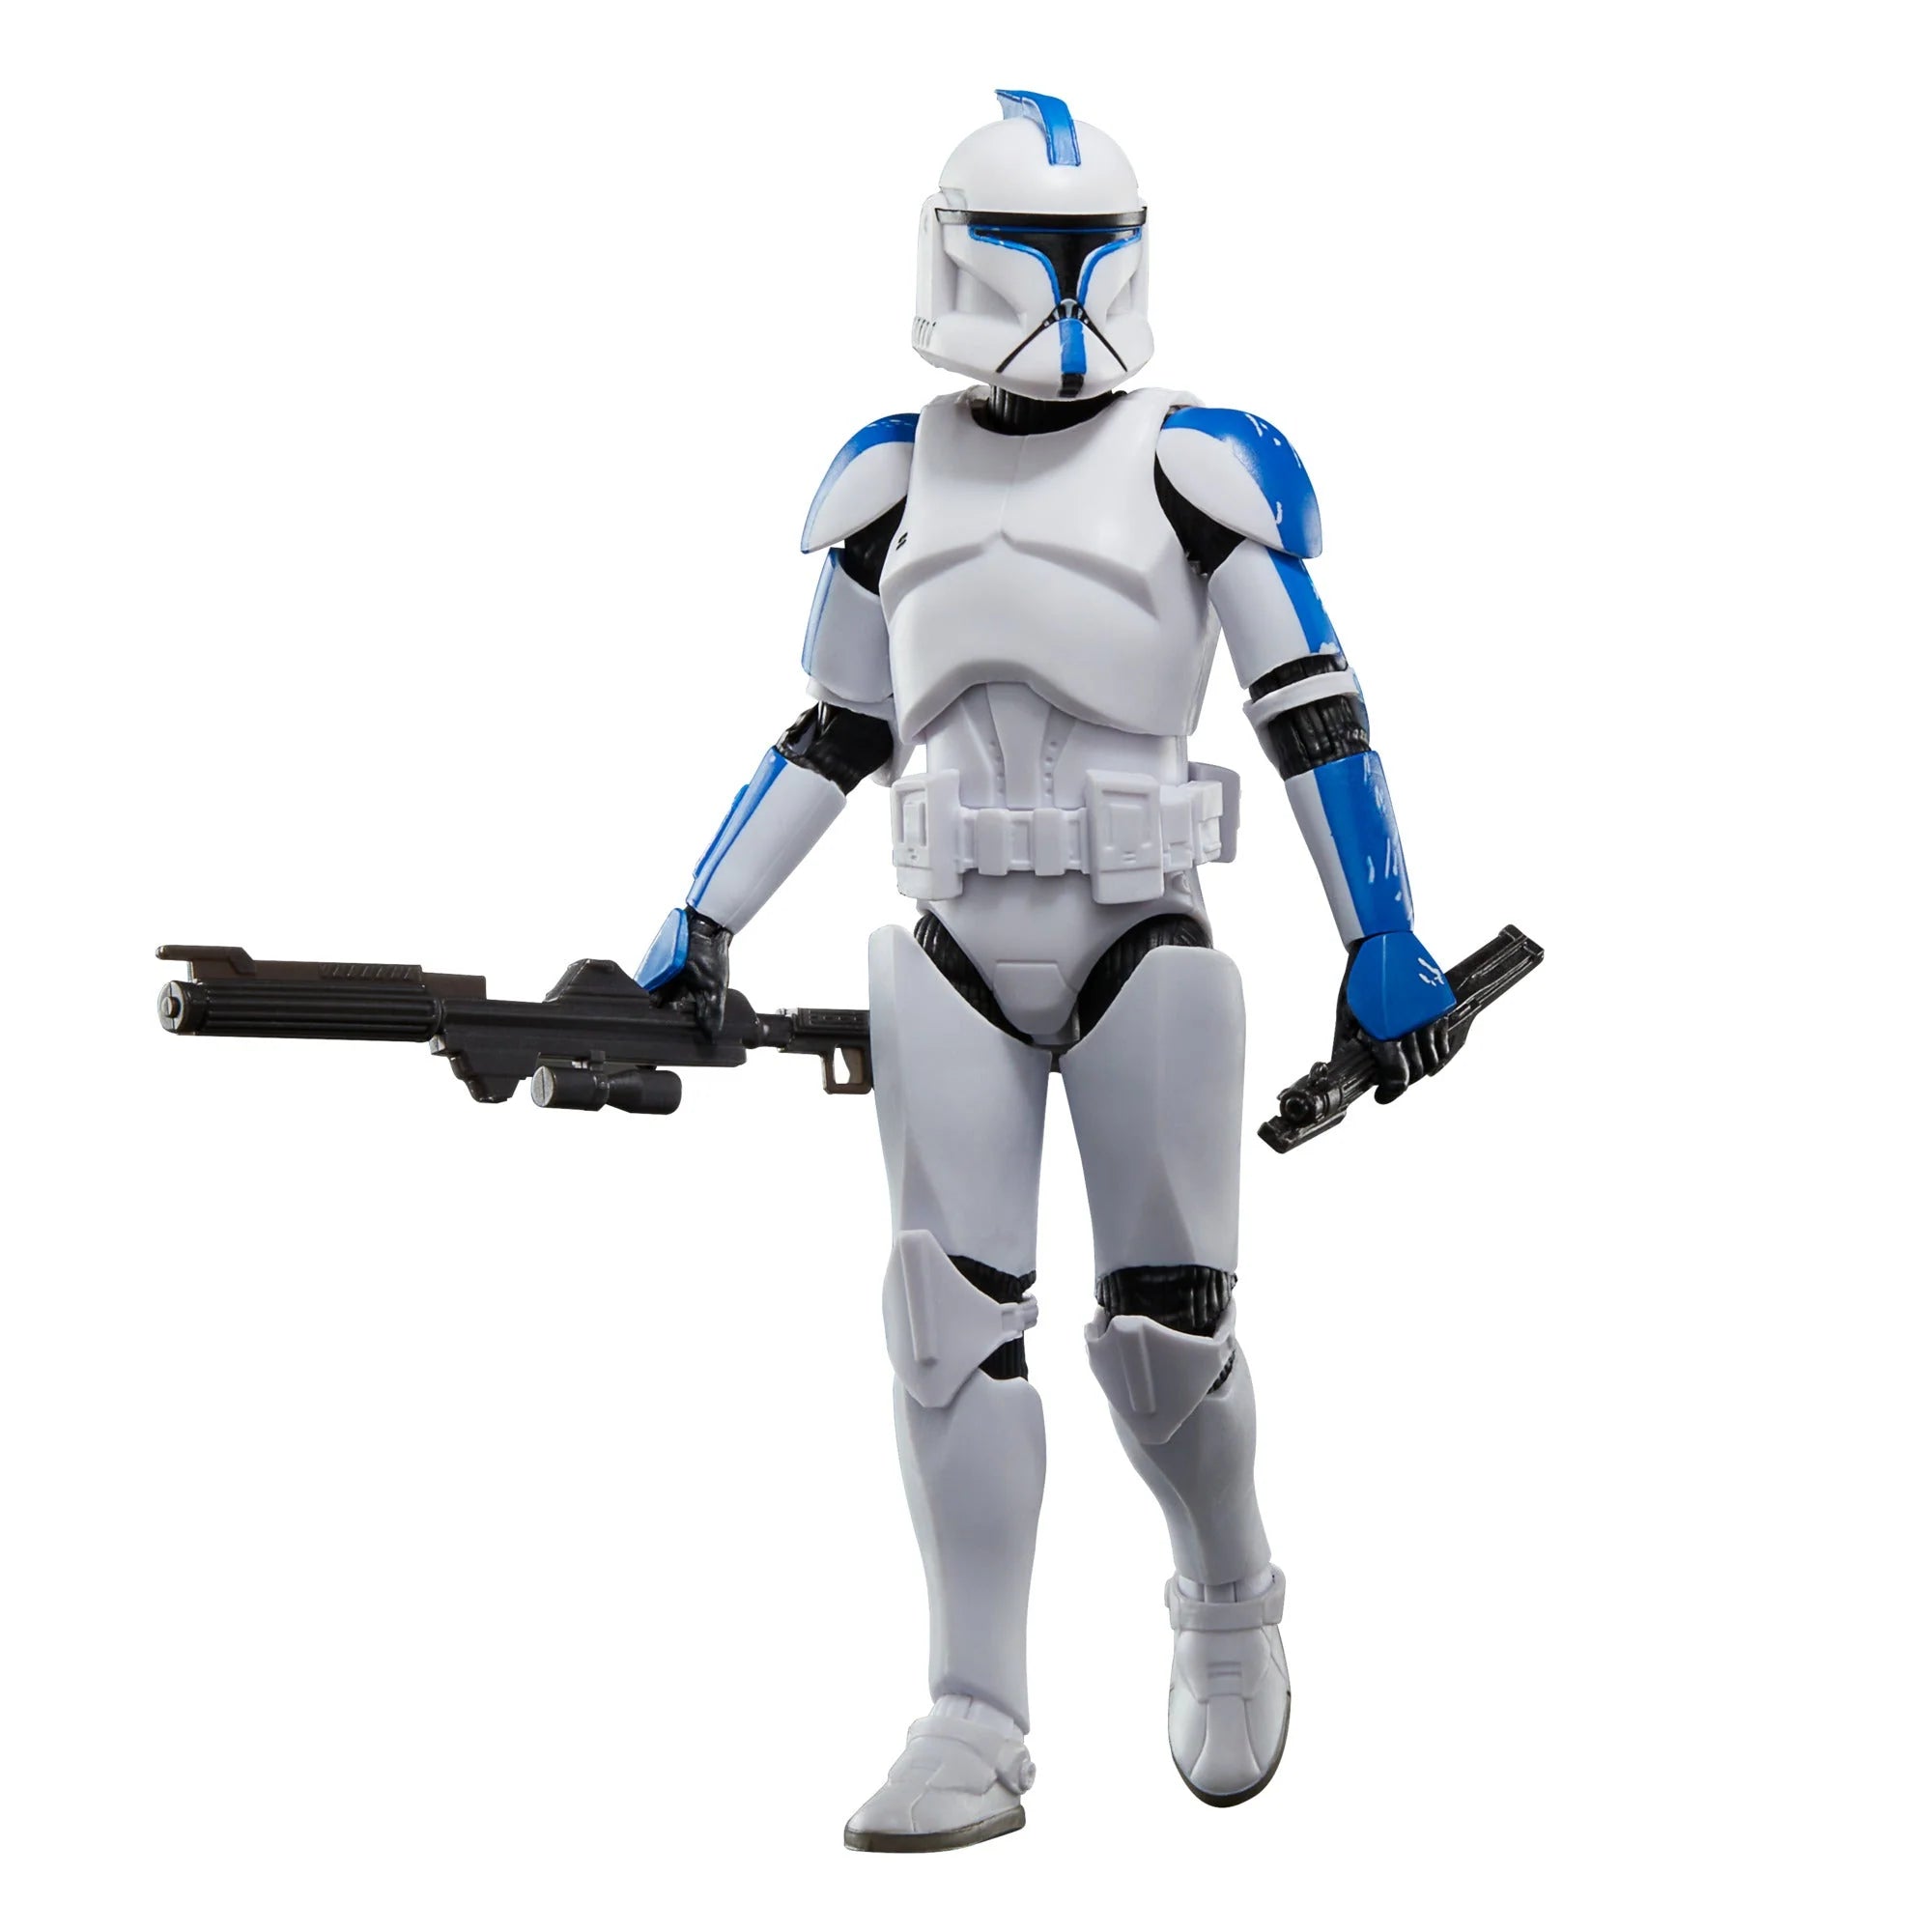 Hasbro Star Wars Black Series Ahsoka Phase I Clone Trooper Lieutenant 332nd Ahsoka's Clone Trooper 2 Pack 6 Inch Action Figure